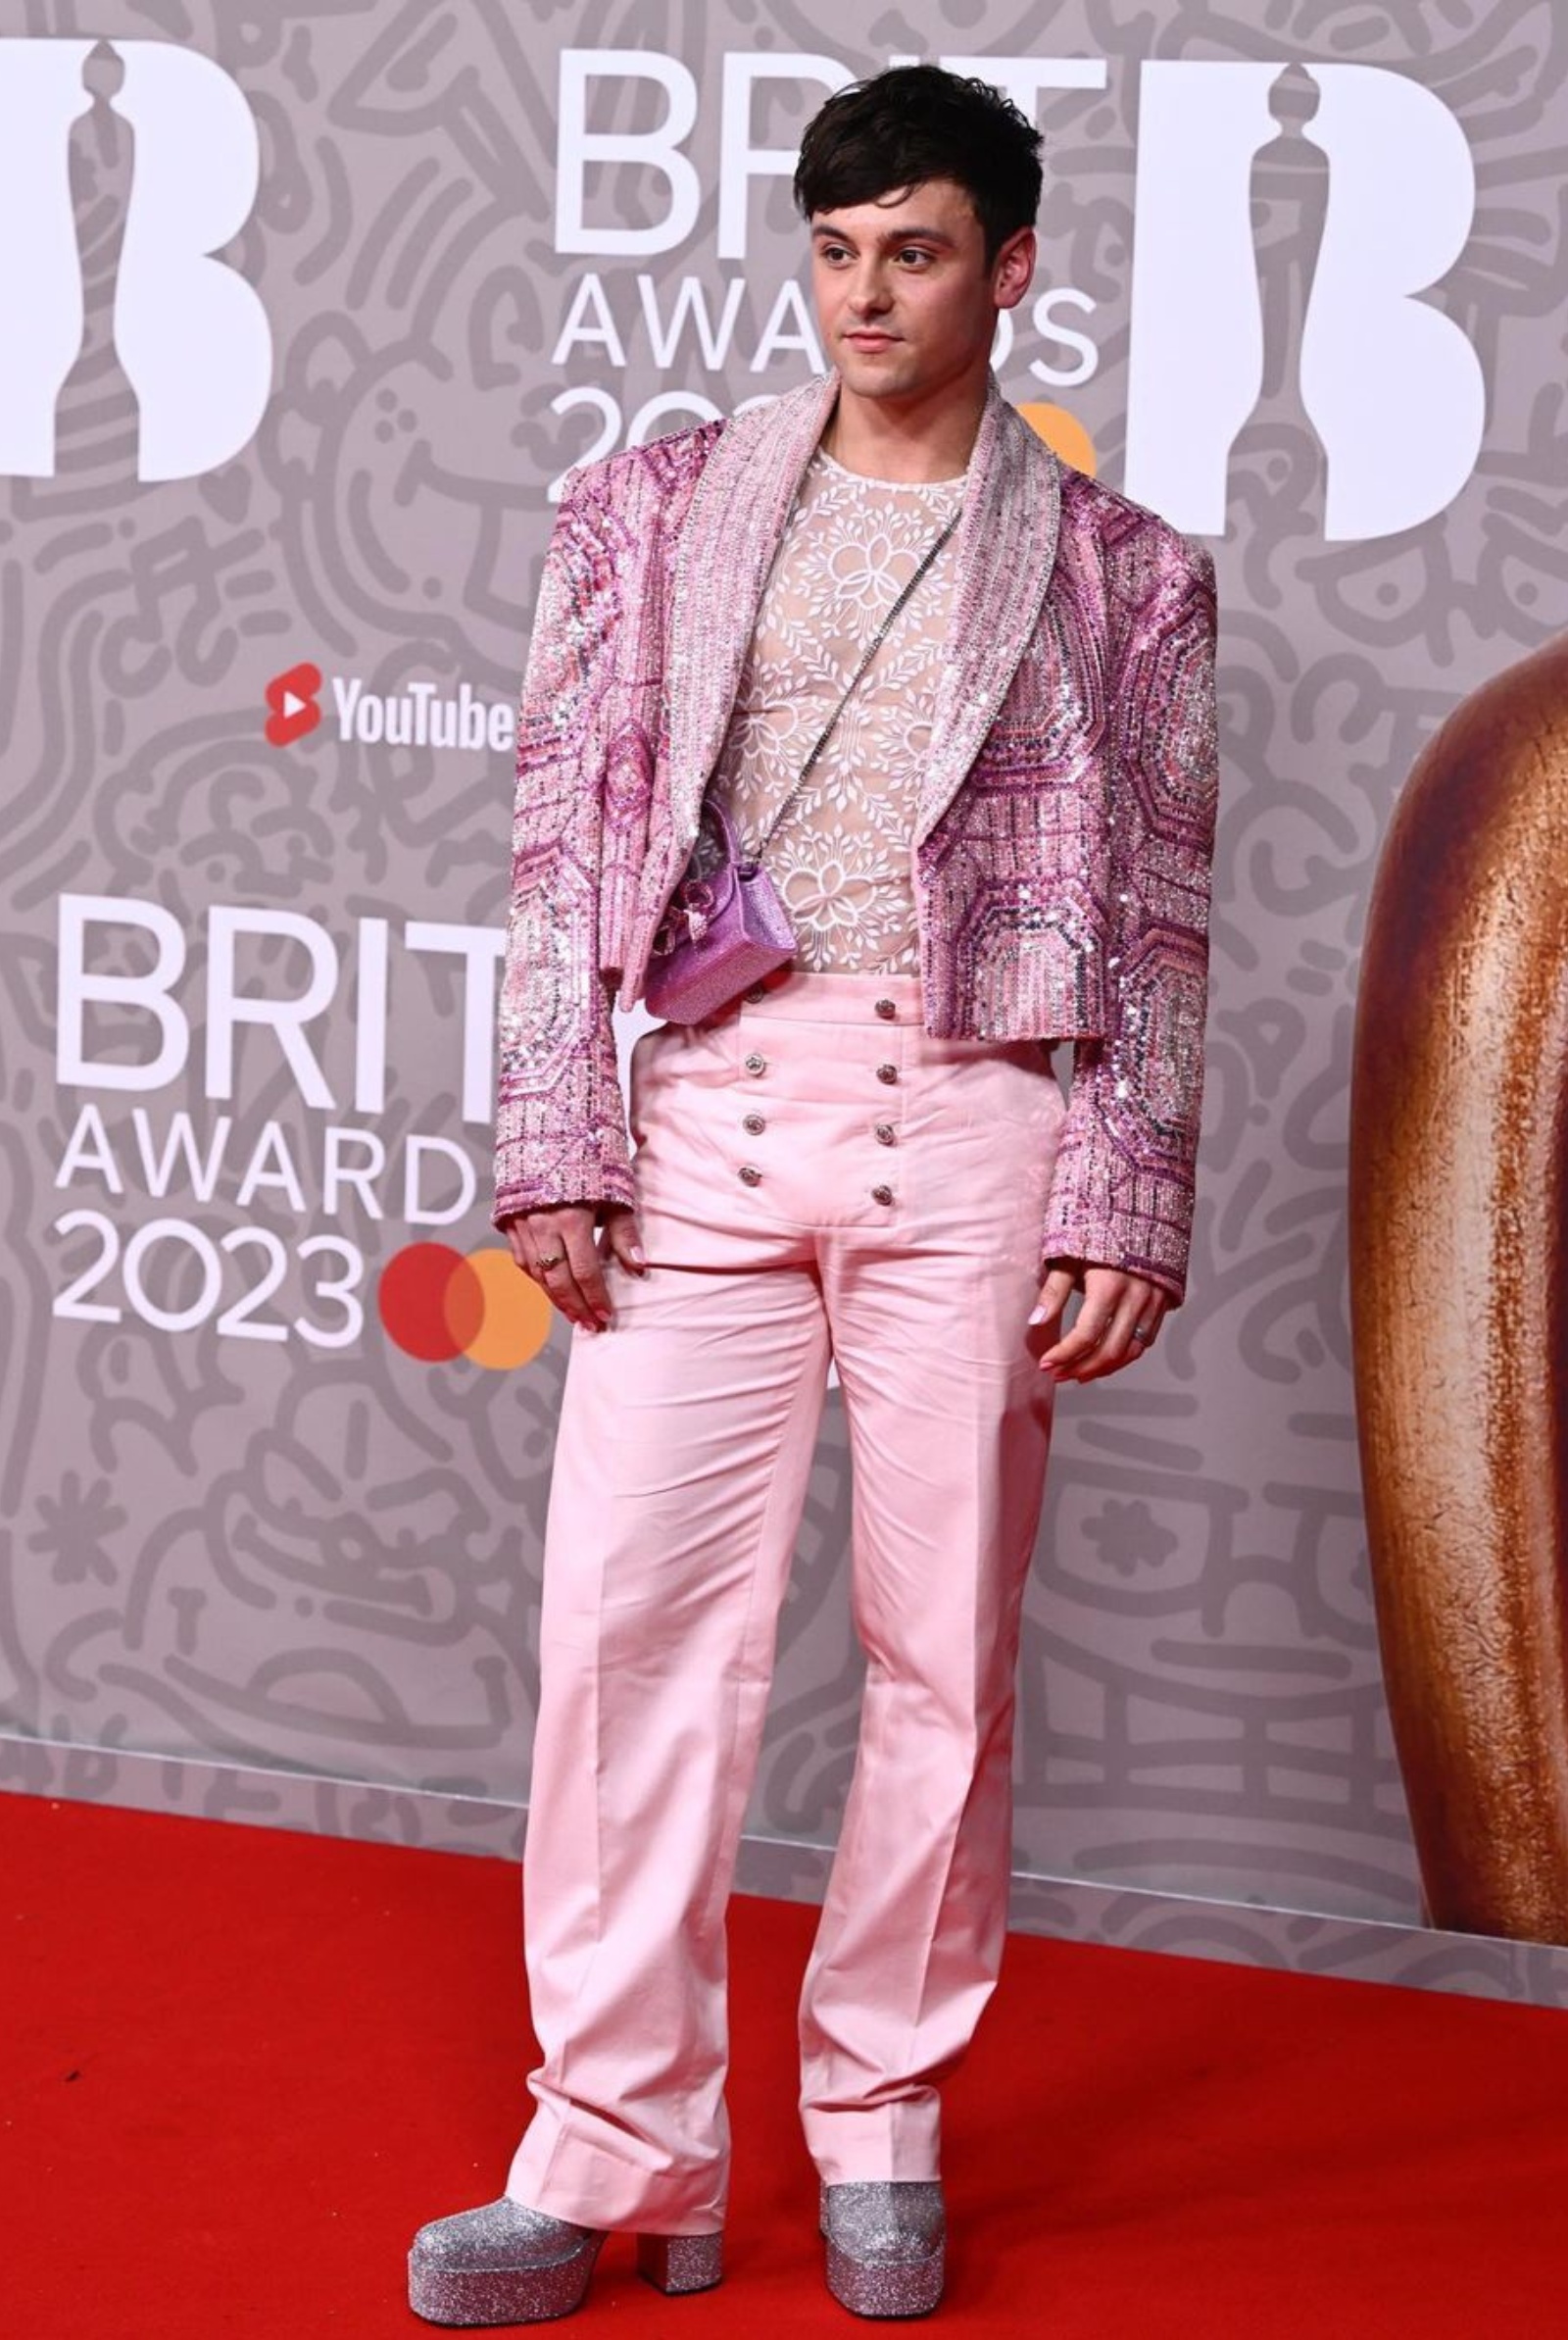 Best Dressed Men at the 2023 Brit Awards - Tom Daley